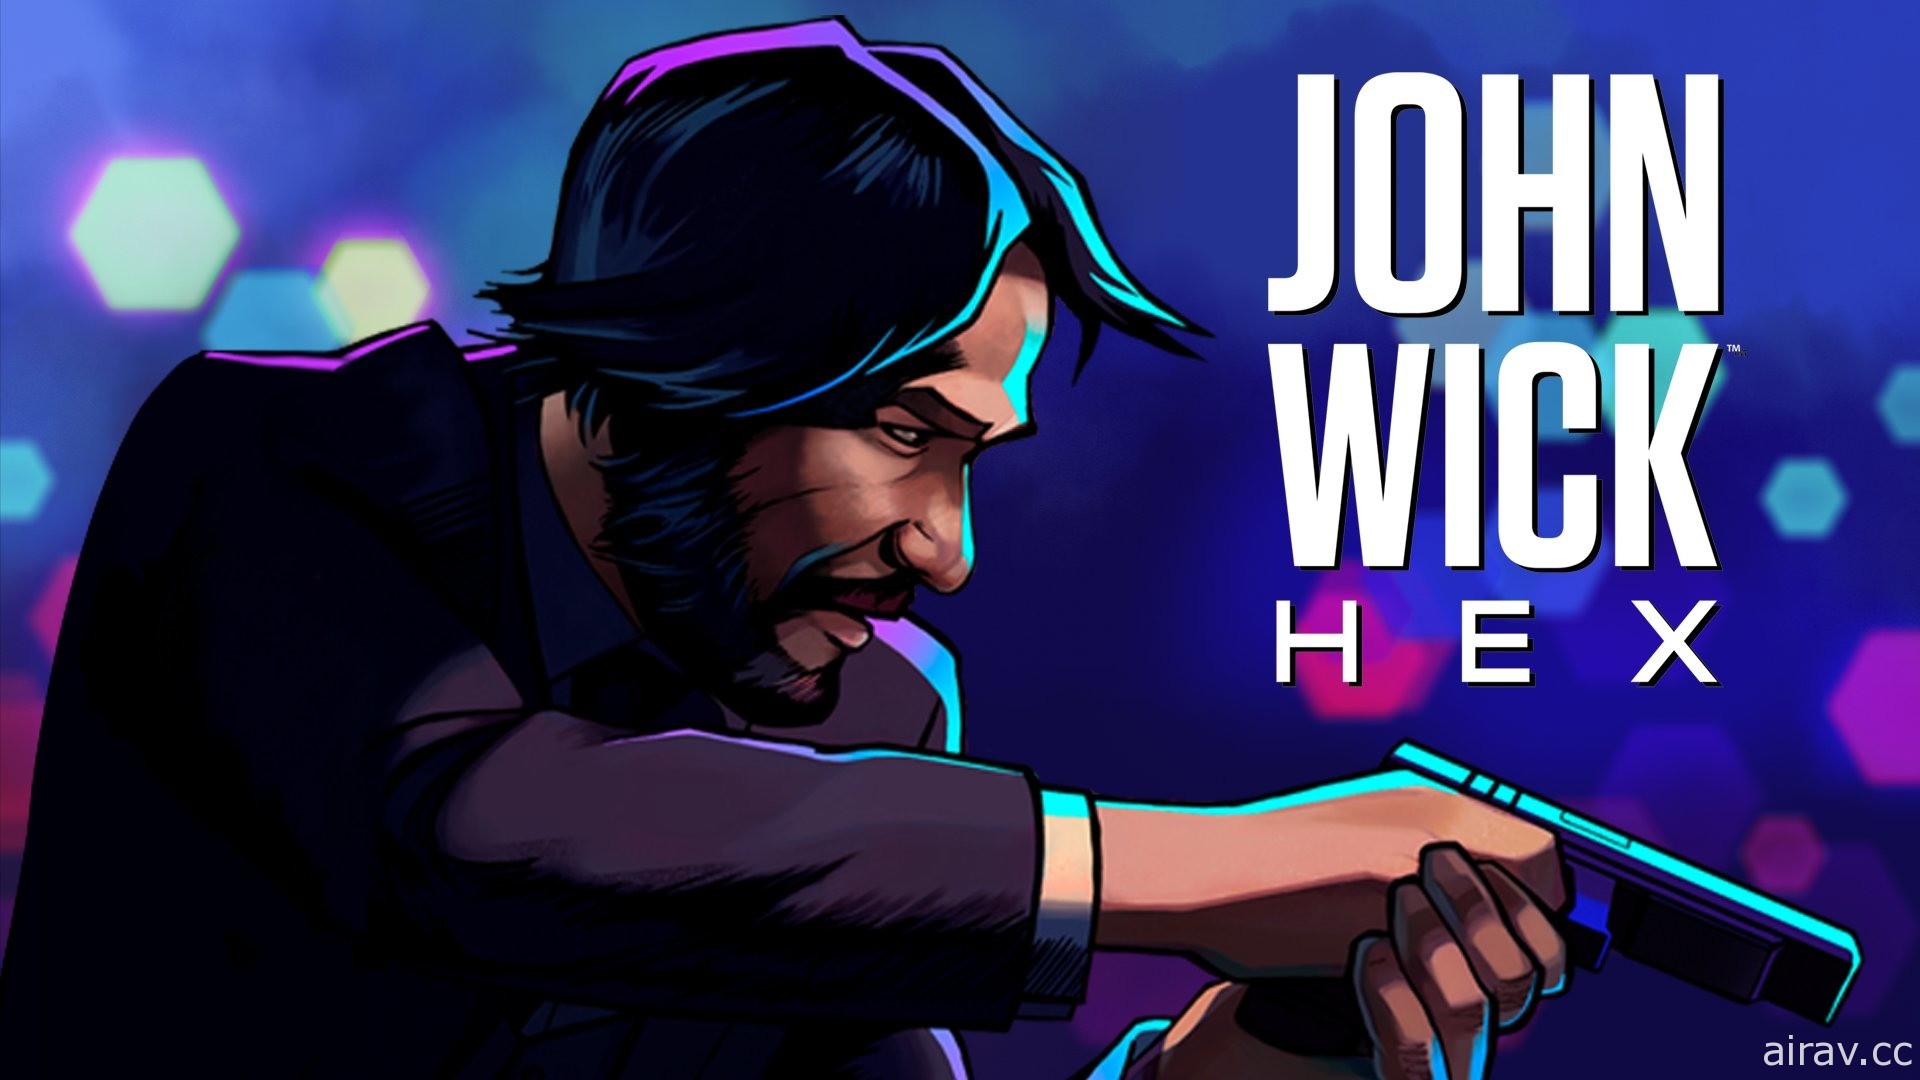 基努李維主演《捍衛任務》改編遊戲《John Wick Hex》年底登上 NS、Steam、Xbox One